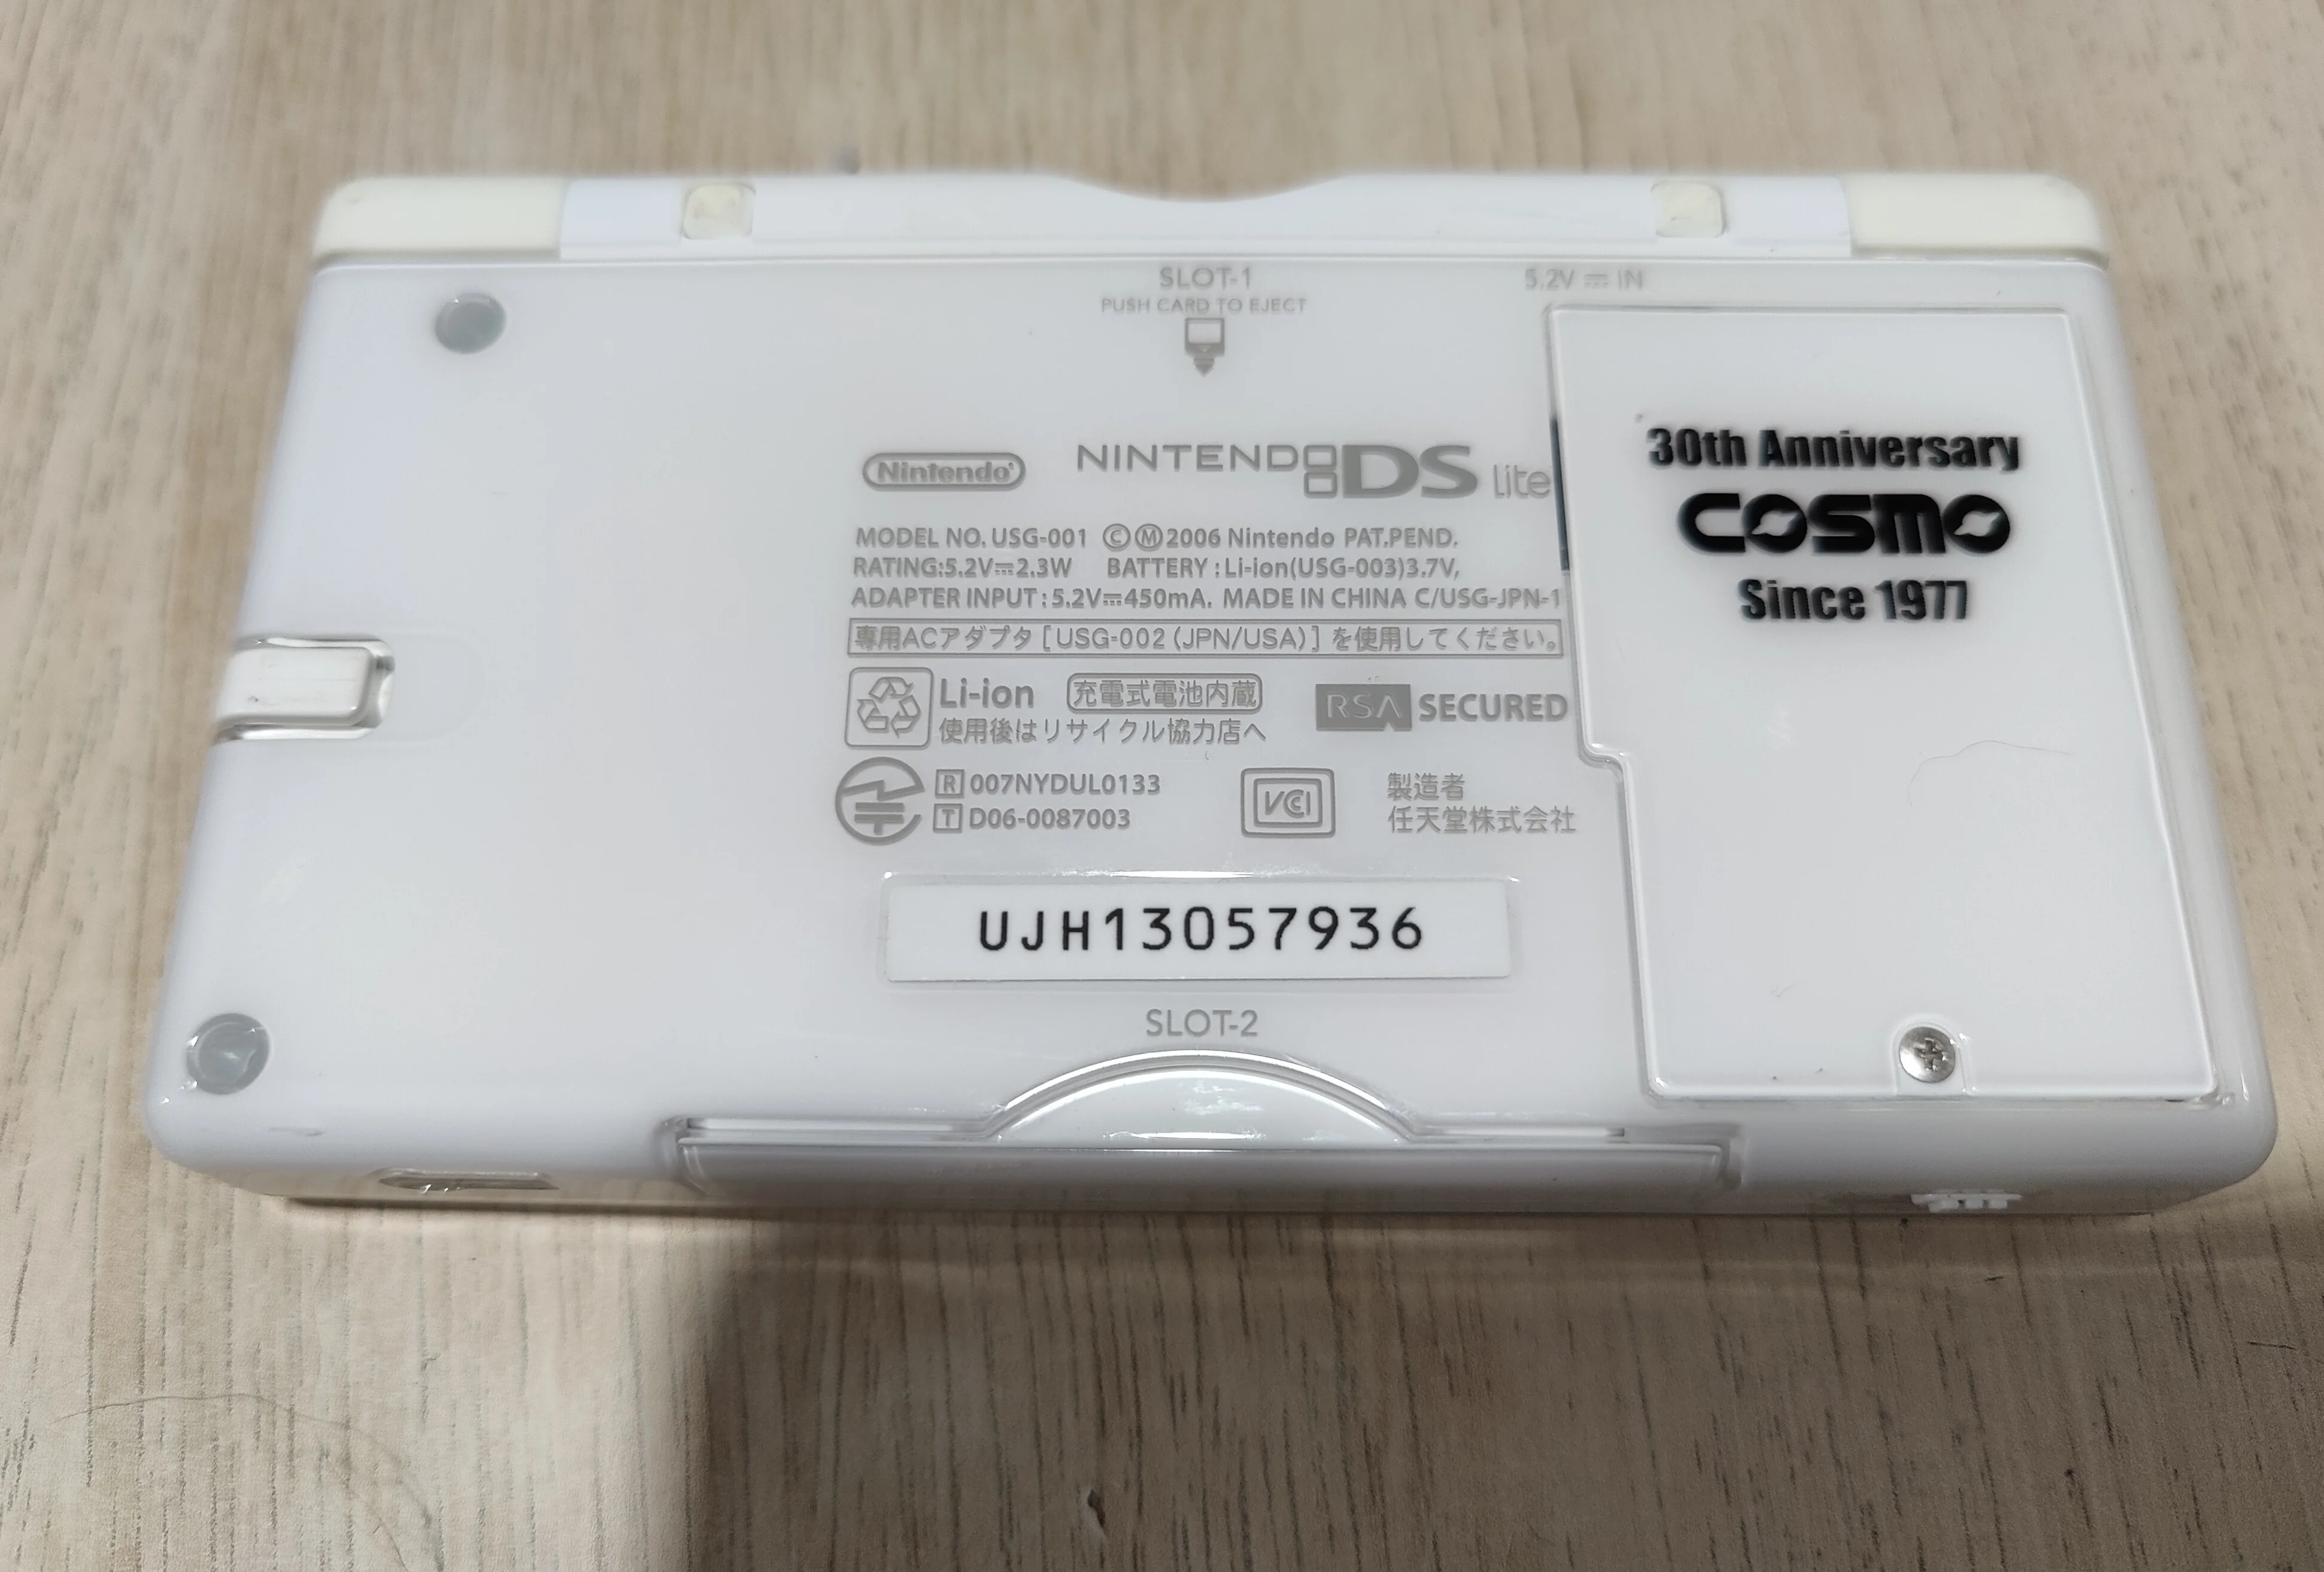  Nintendo DS Lite Cosmo 30th Anniversary Console